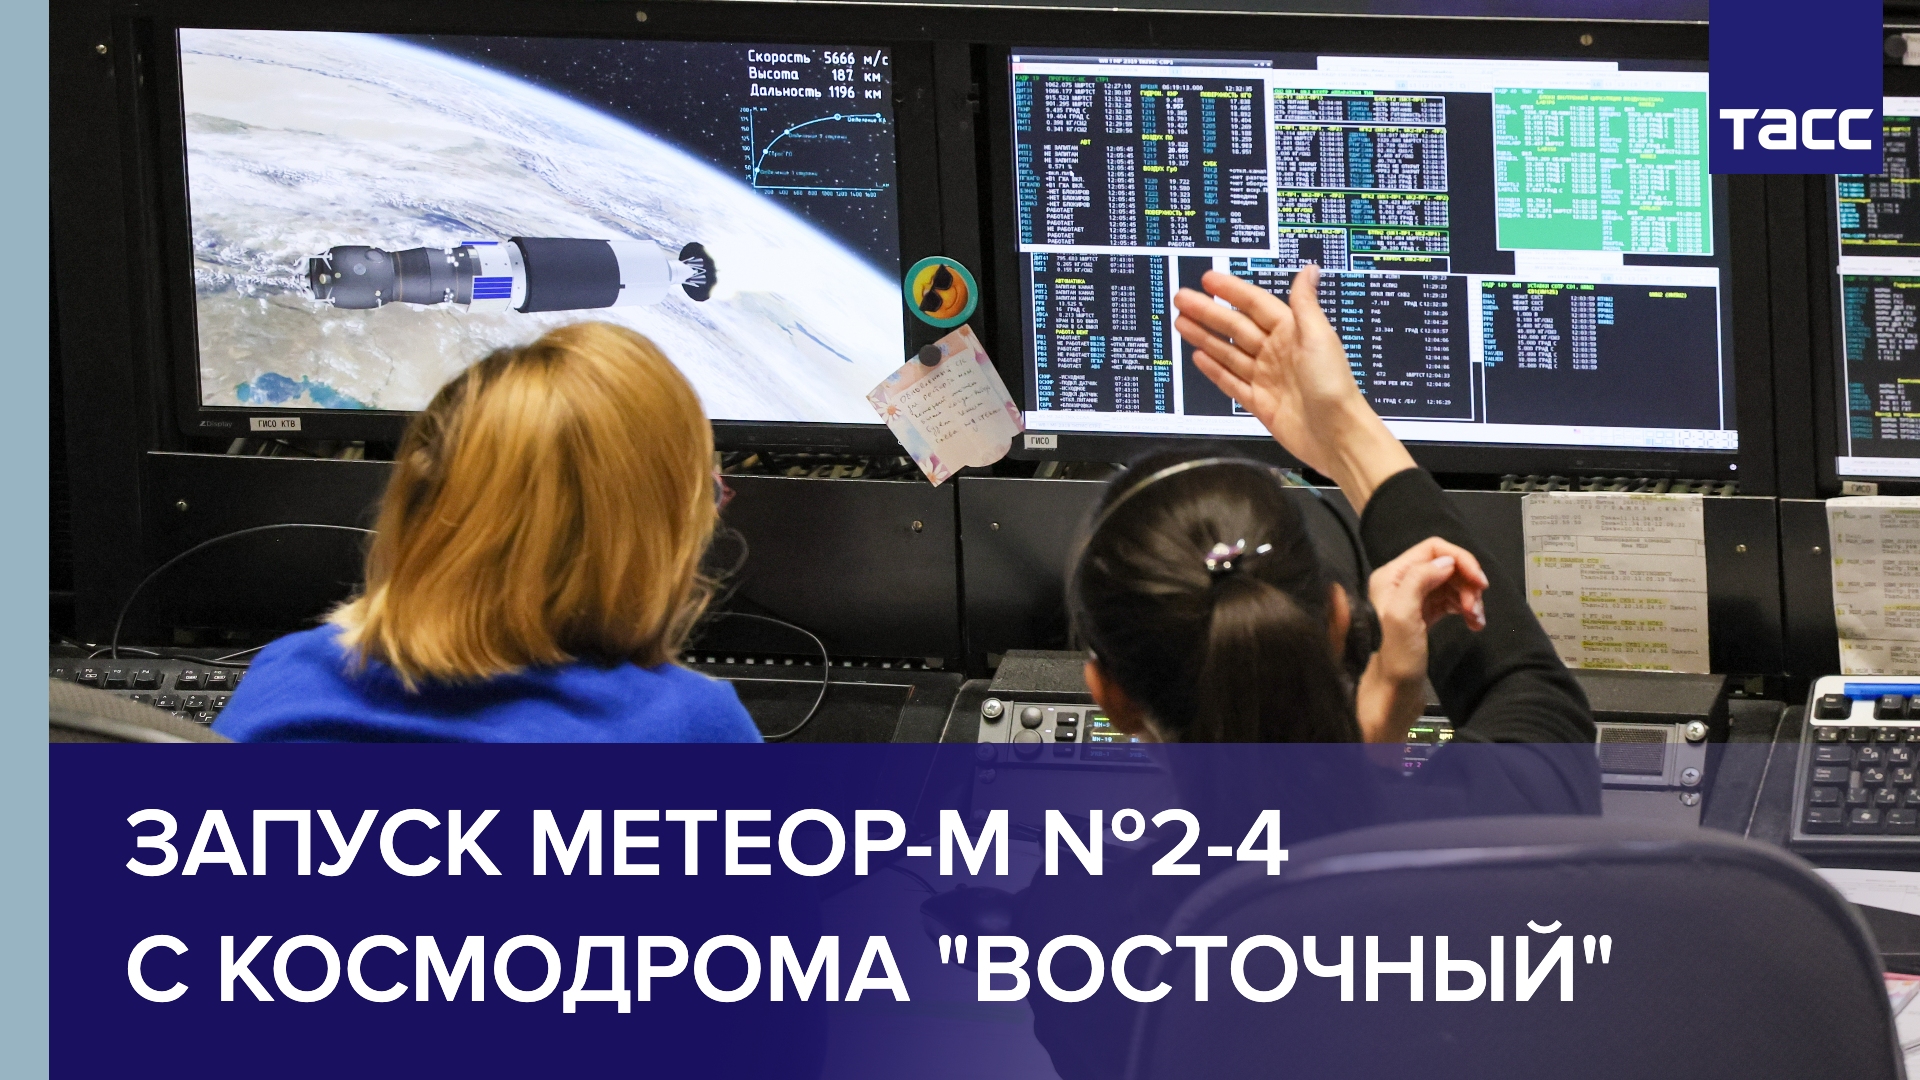 Запуск Метеор-М №2-4 с космодрома "Восточный"